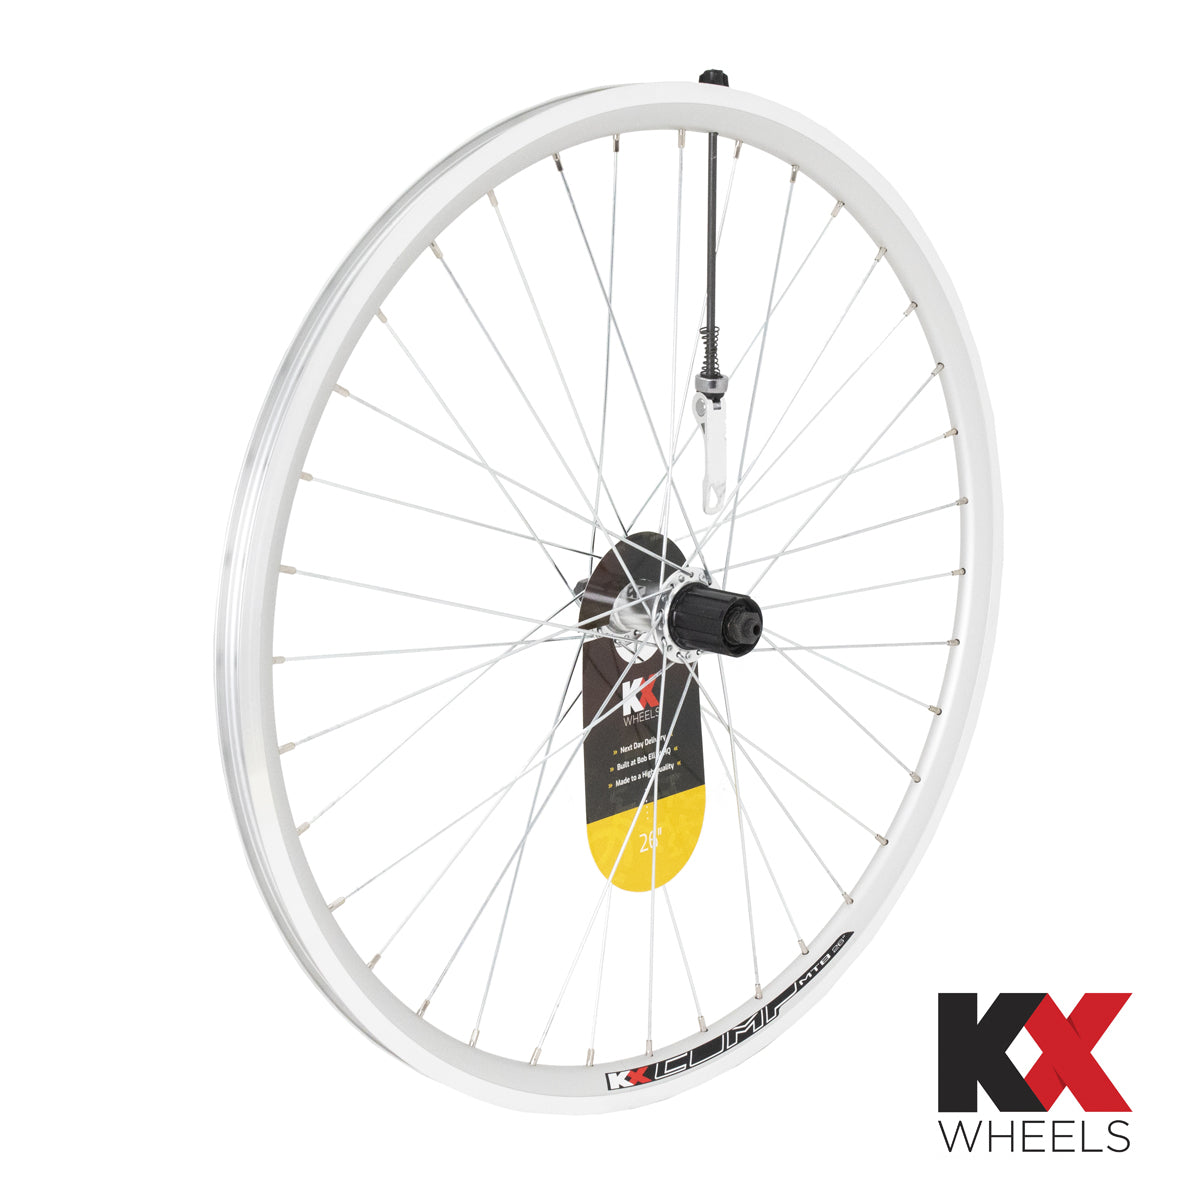 KX Wheels Double Wall QR Cassette 26 Inch Rear Bike Wheel Silver